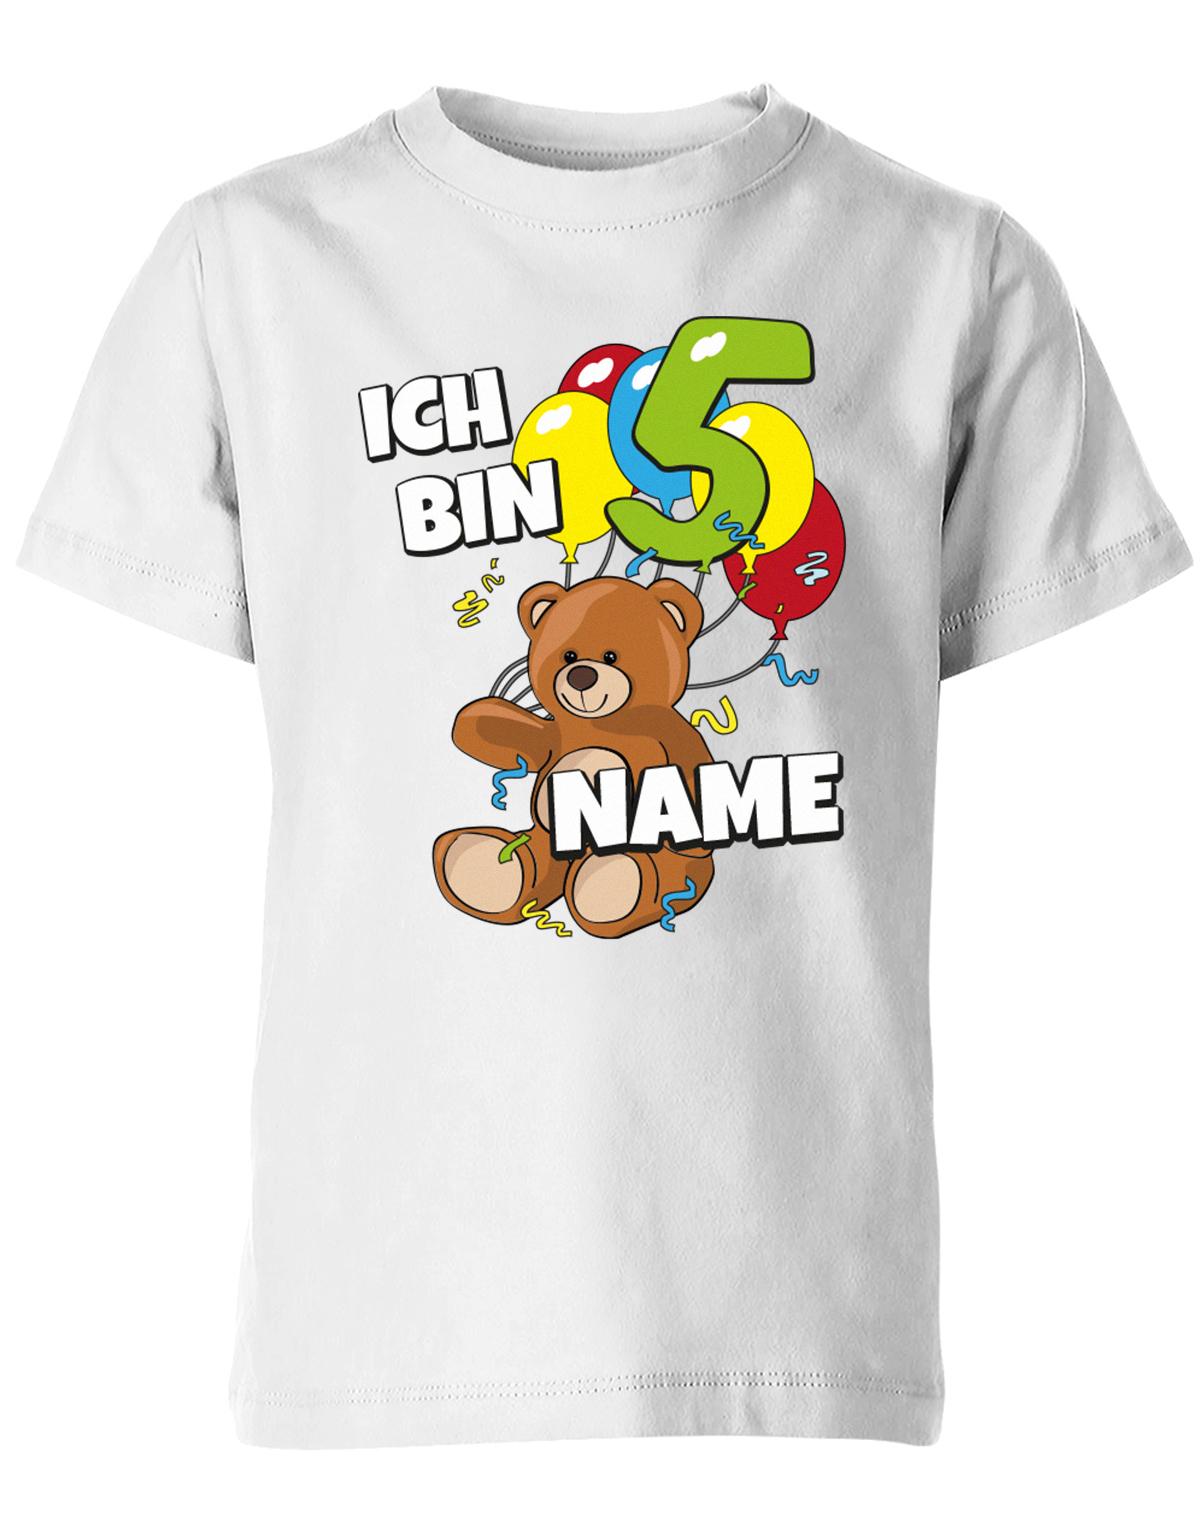 ich-bin-5-teddy-luftballons-kinder-shirt-weiss